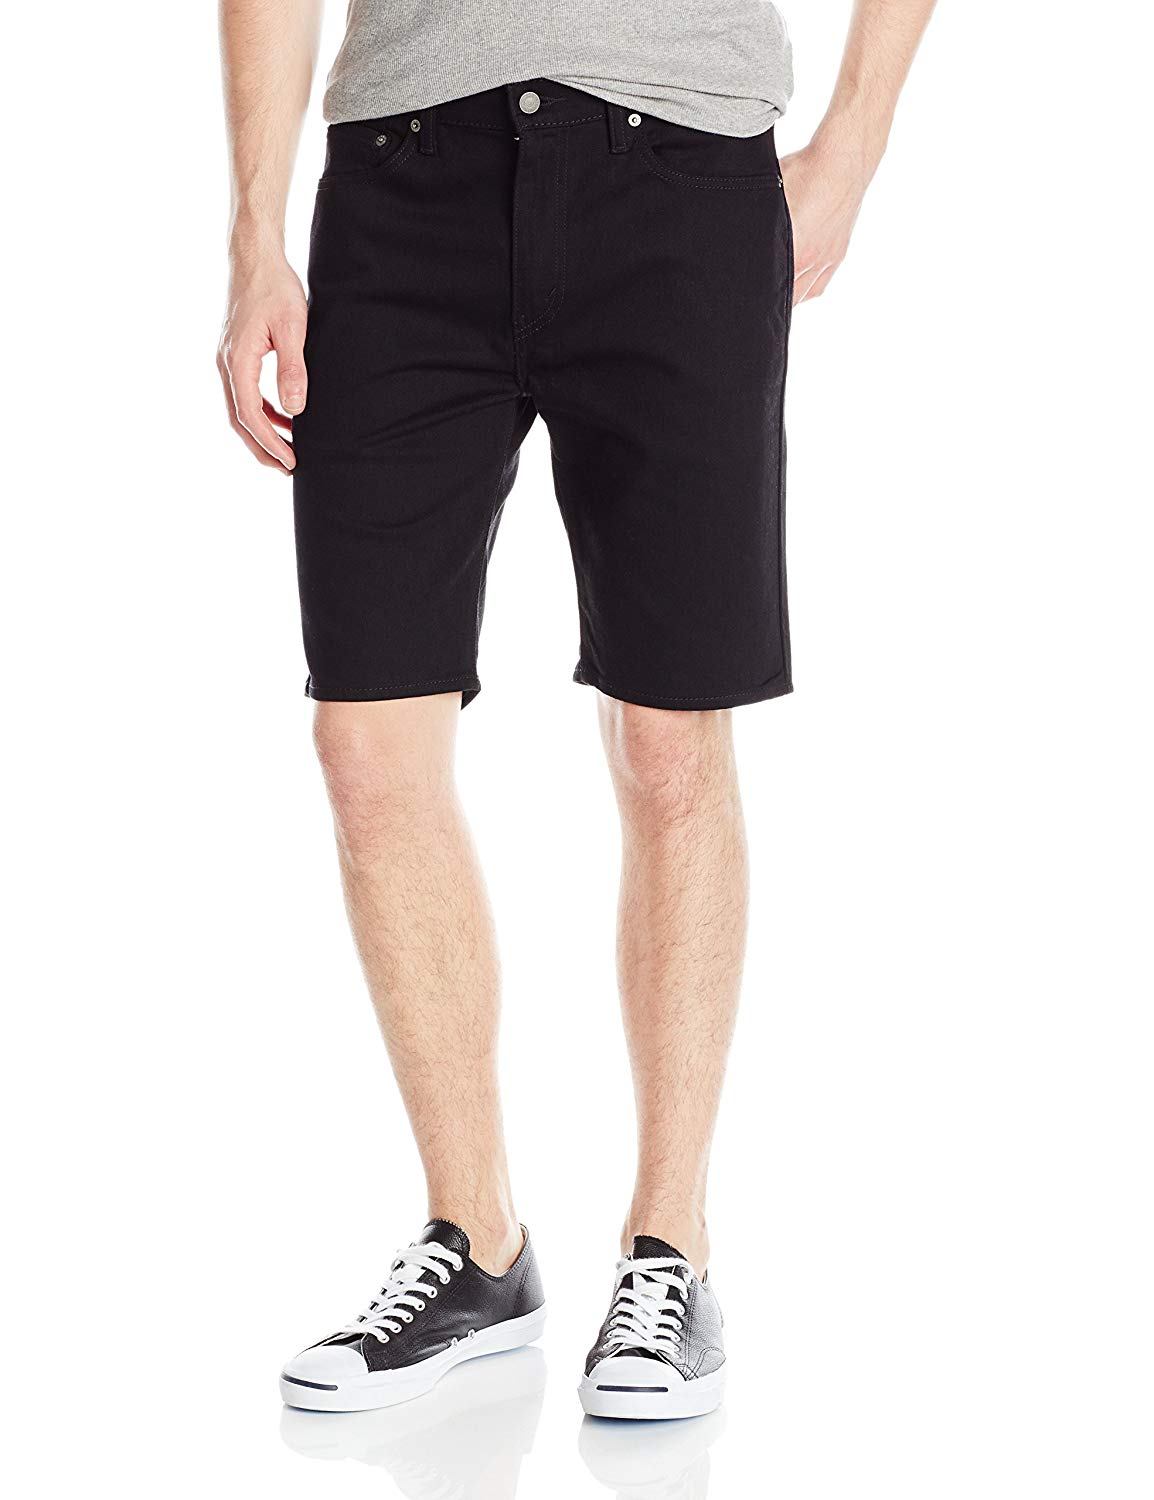 Levi's Men's 505 Regular Fit Short, Black, 34, Black, Size 40 1bam | eBay